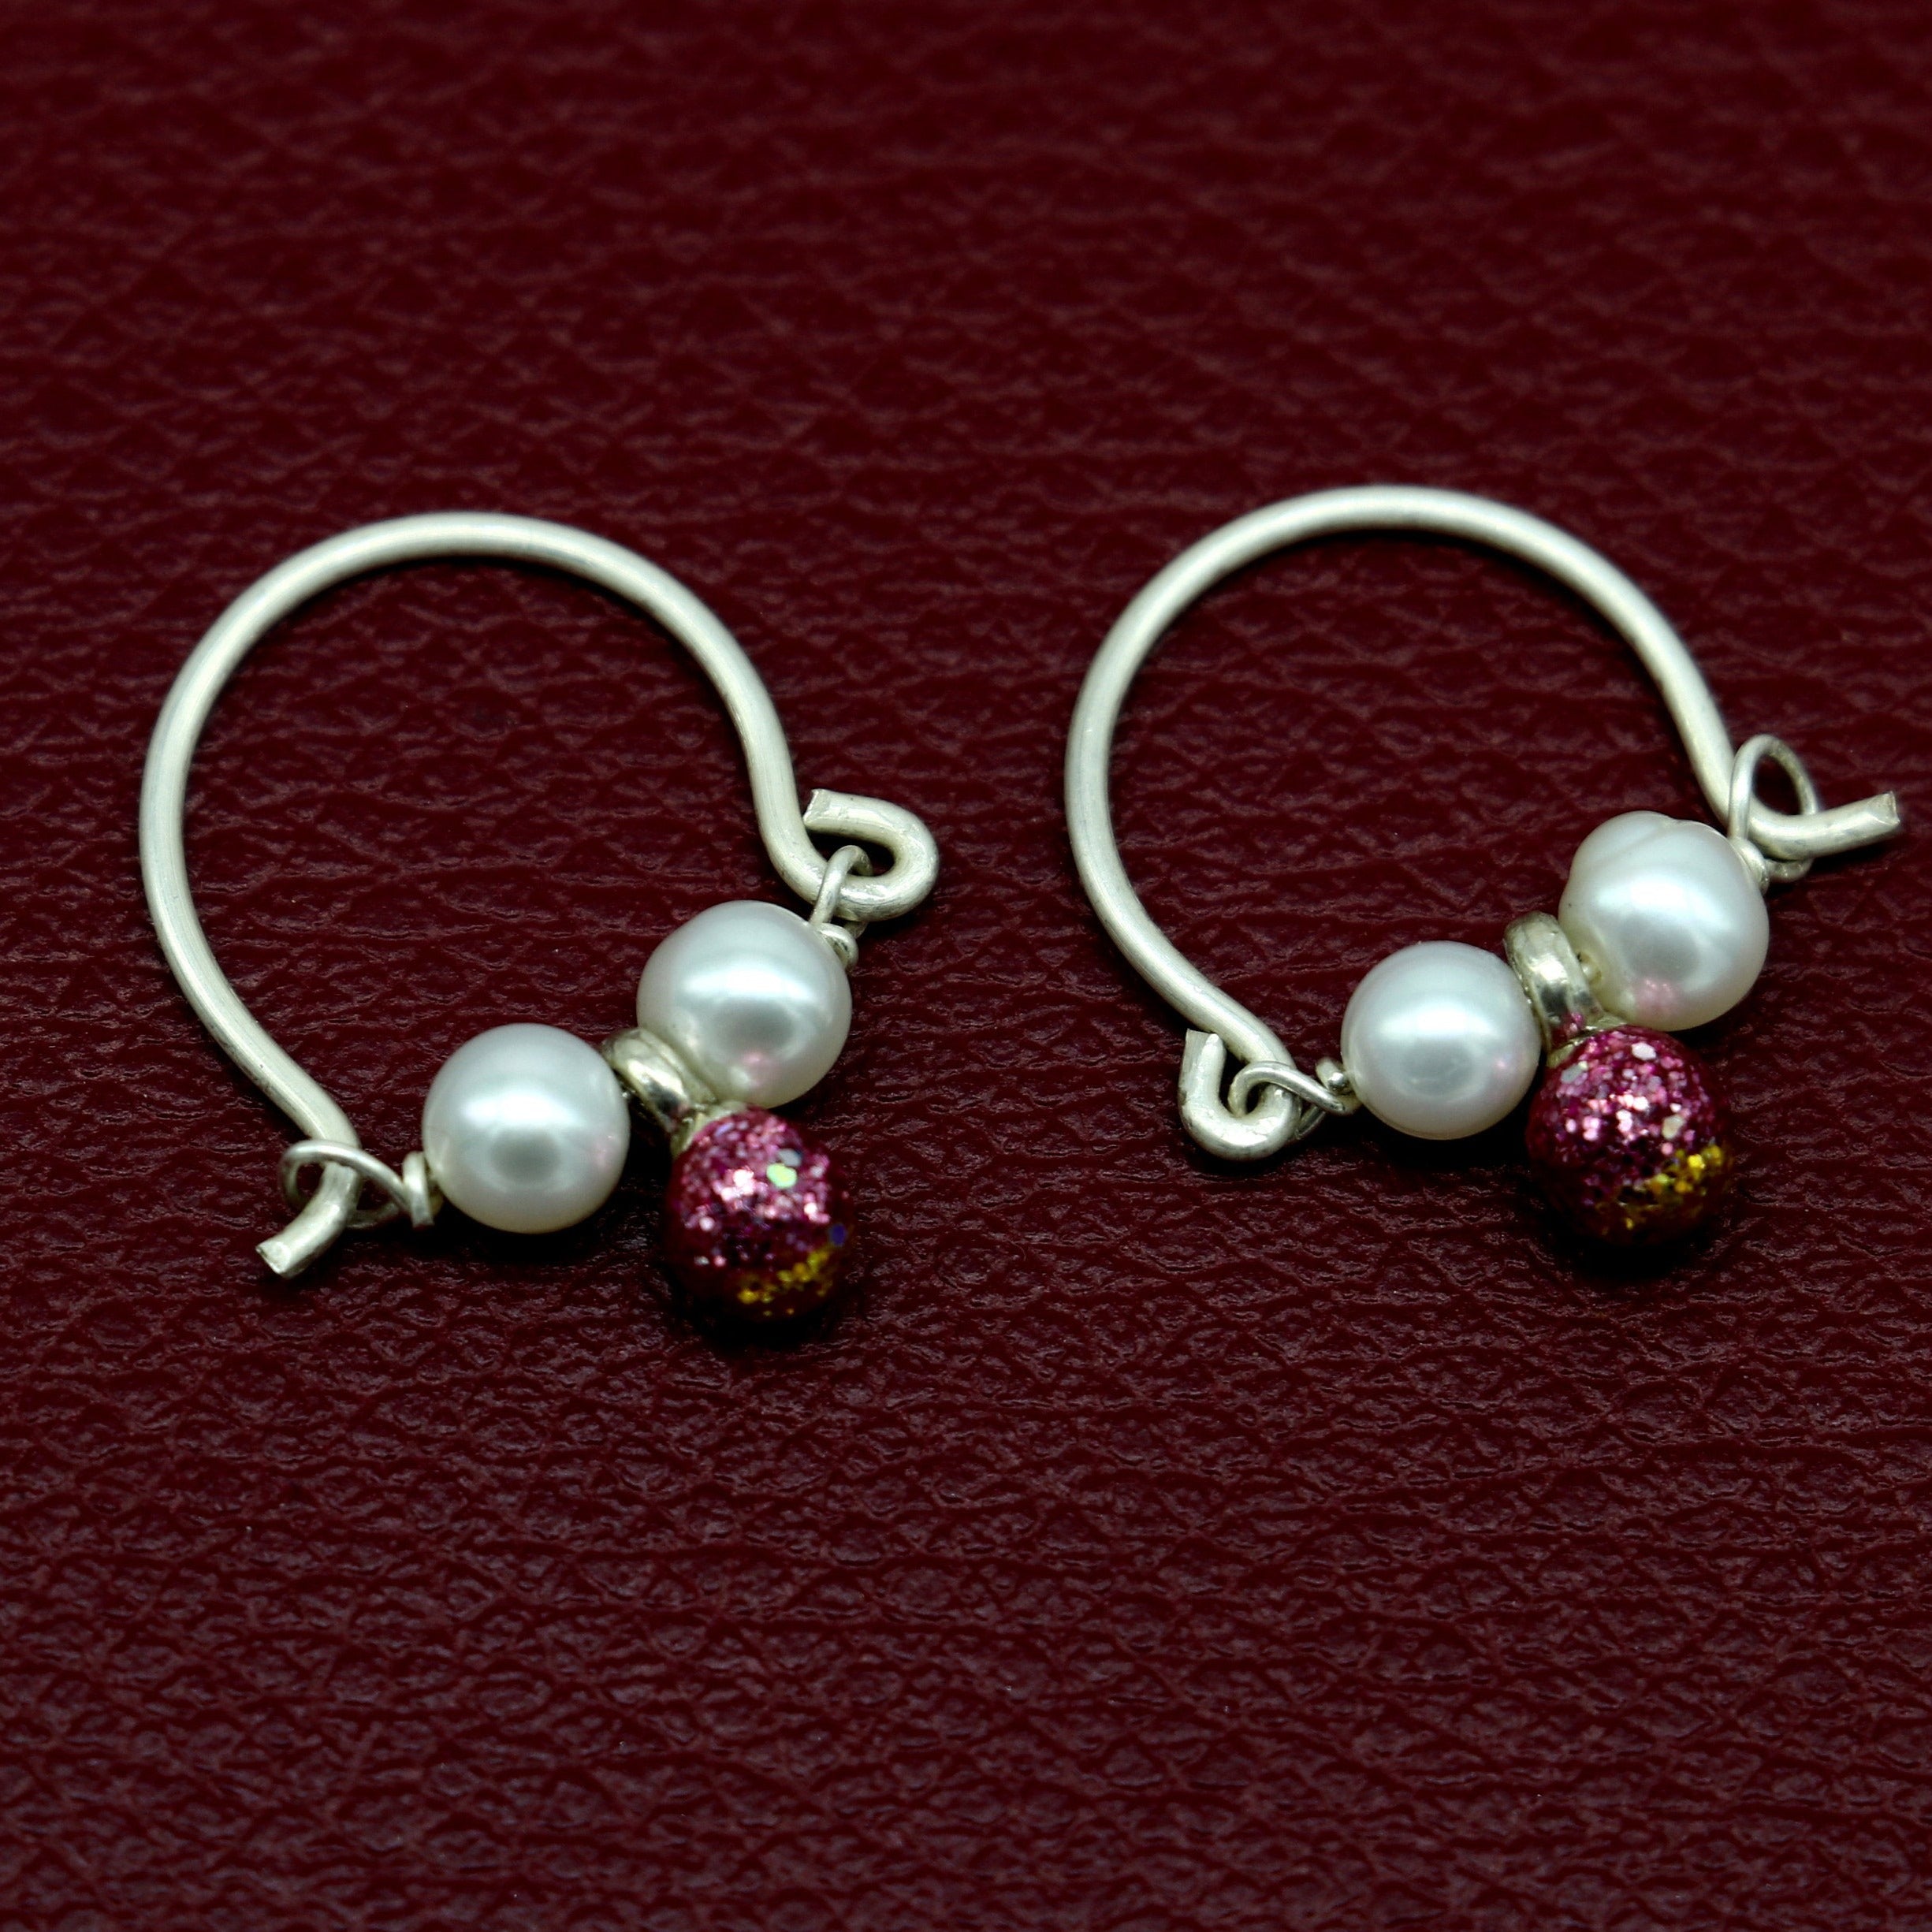 hoop earrings in 925 silver Bali style for men and women - webid:1818